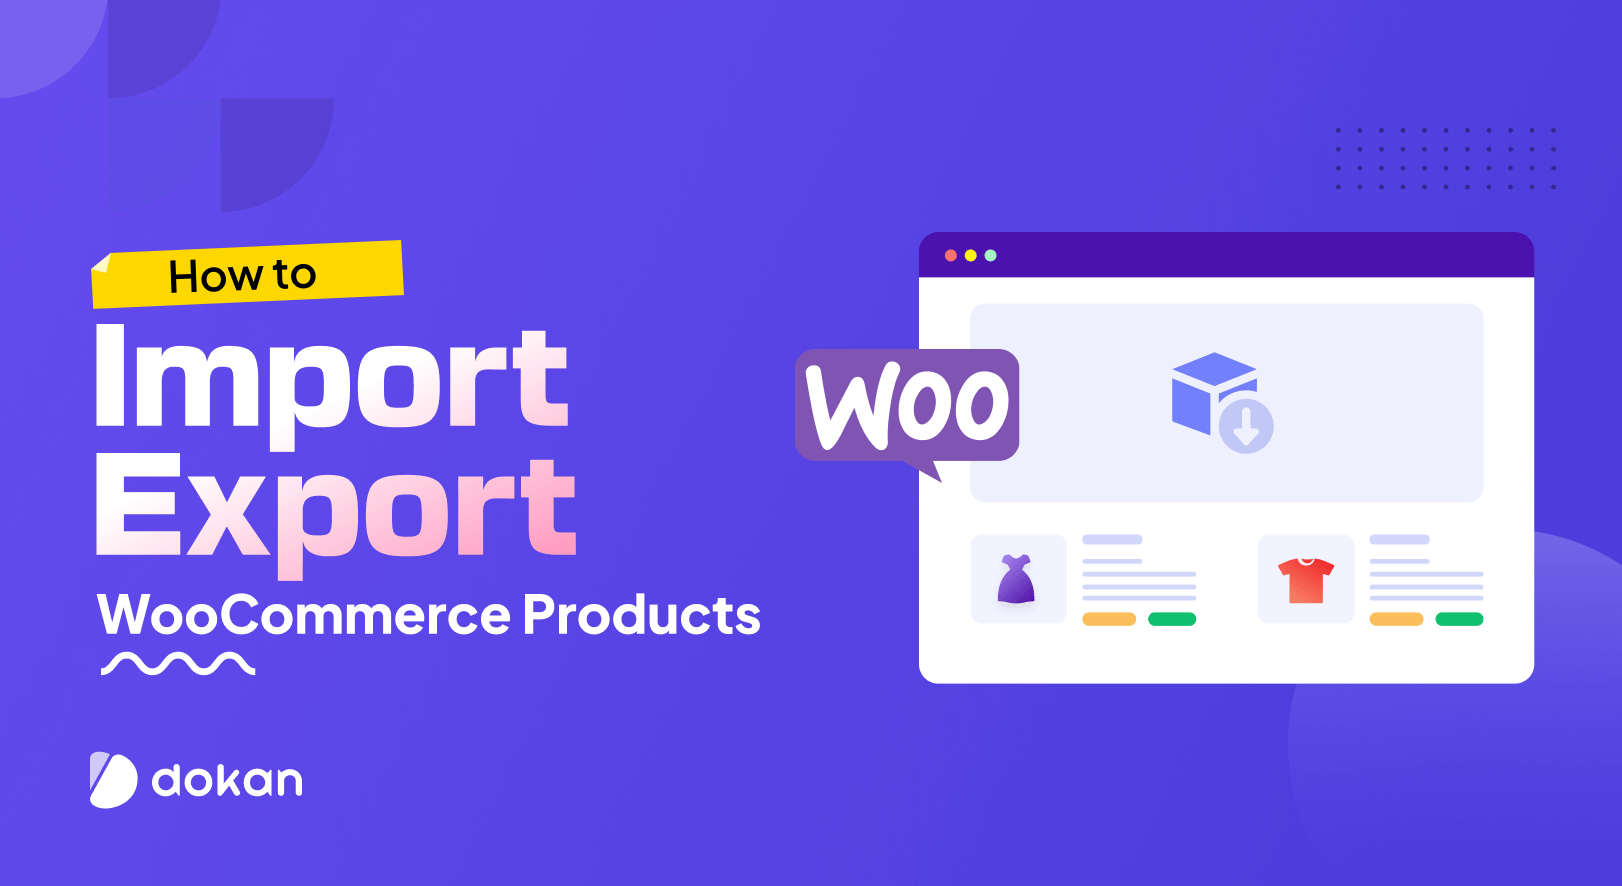 Cómo importar y exportar productos WooCommerce: 2 formas sencillas para principiantes